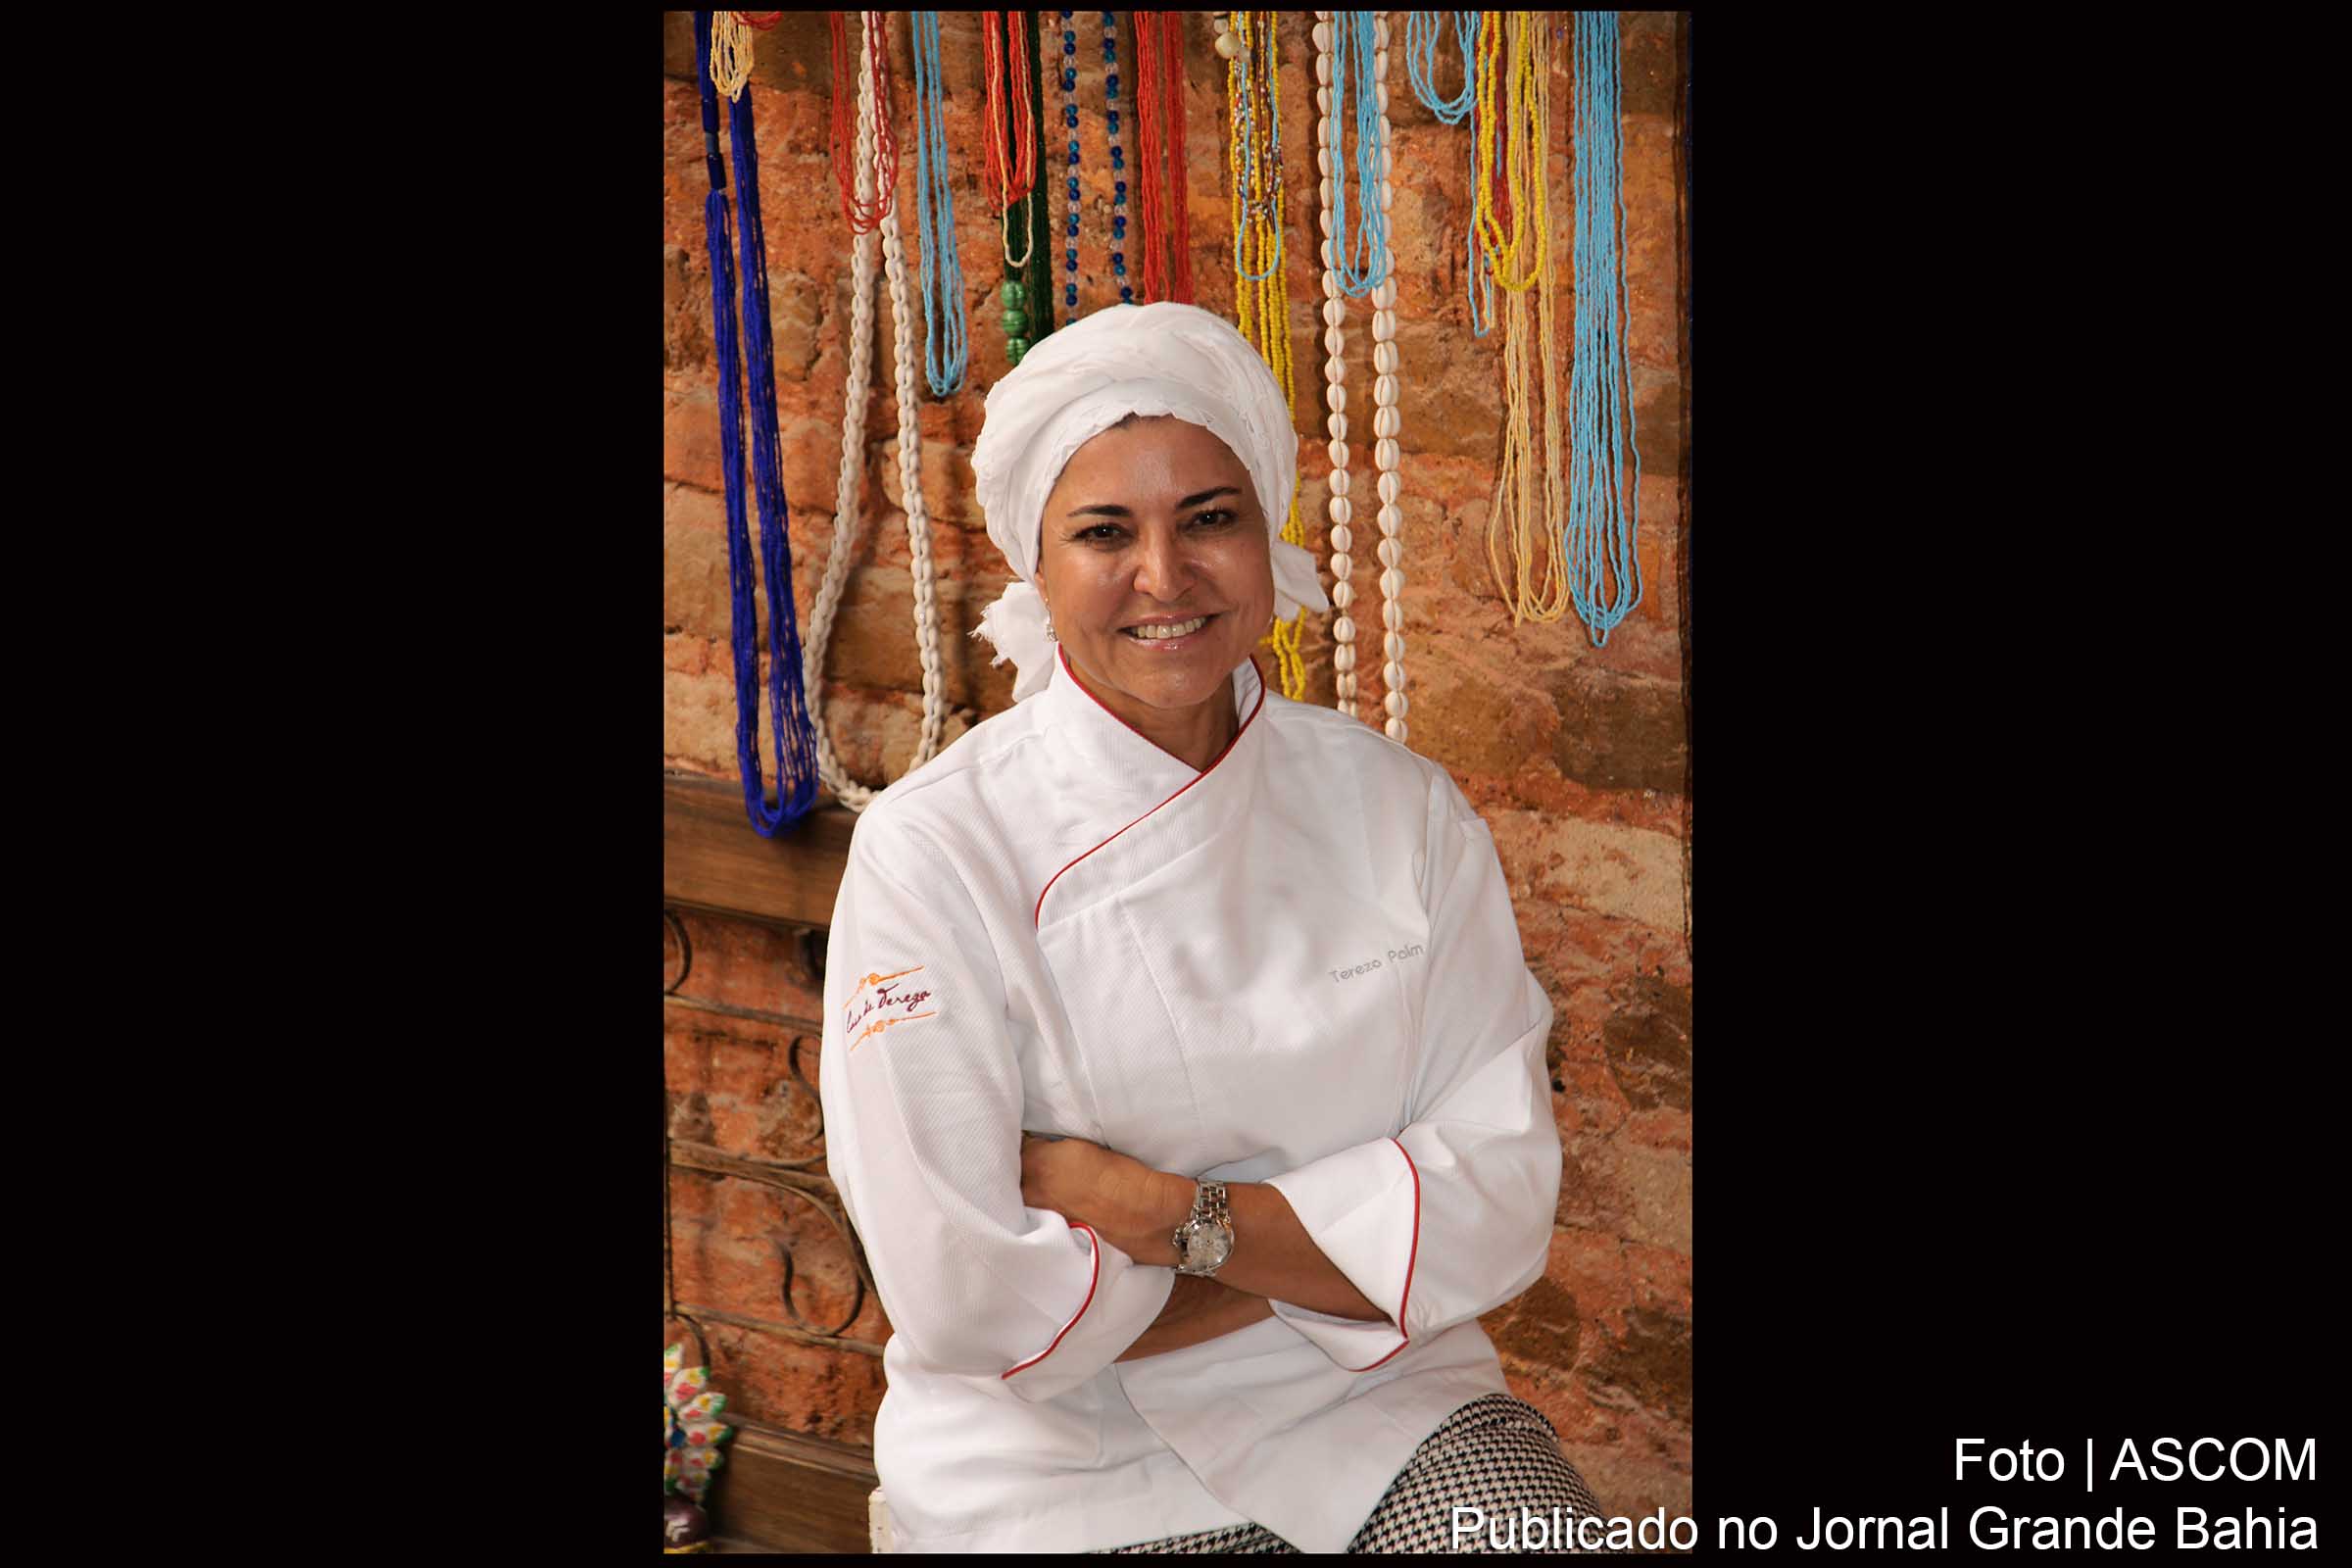 Chef de cozinha Tereza Paim.